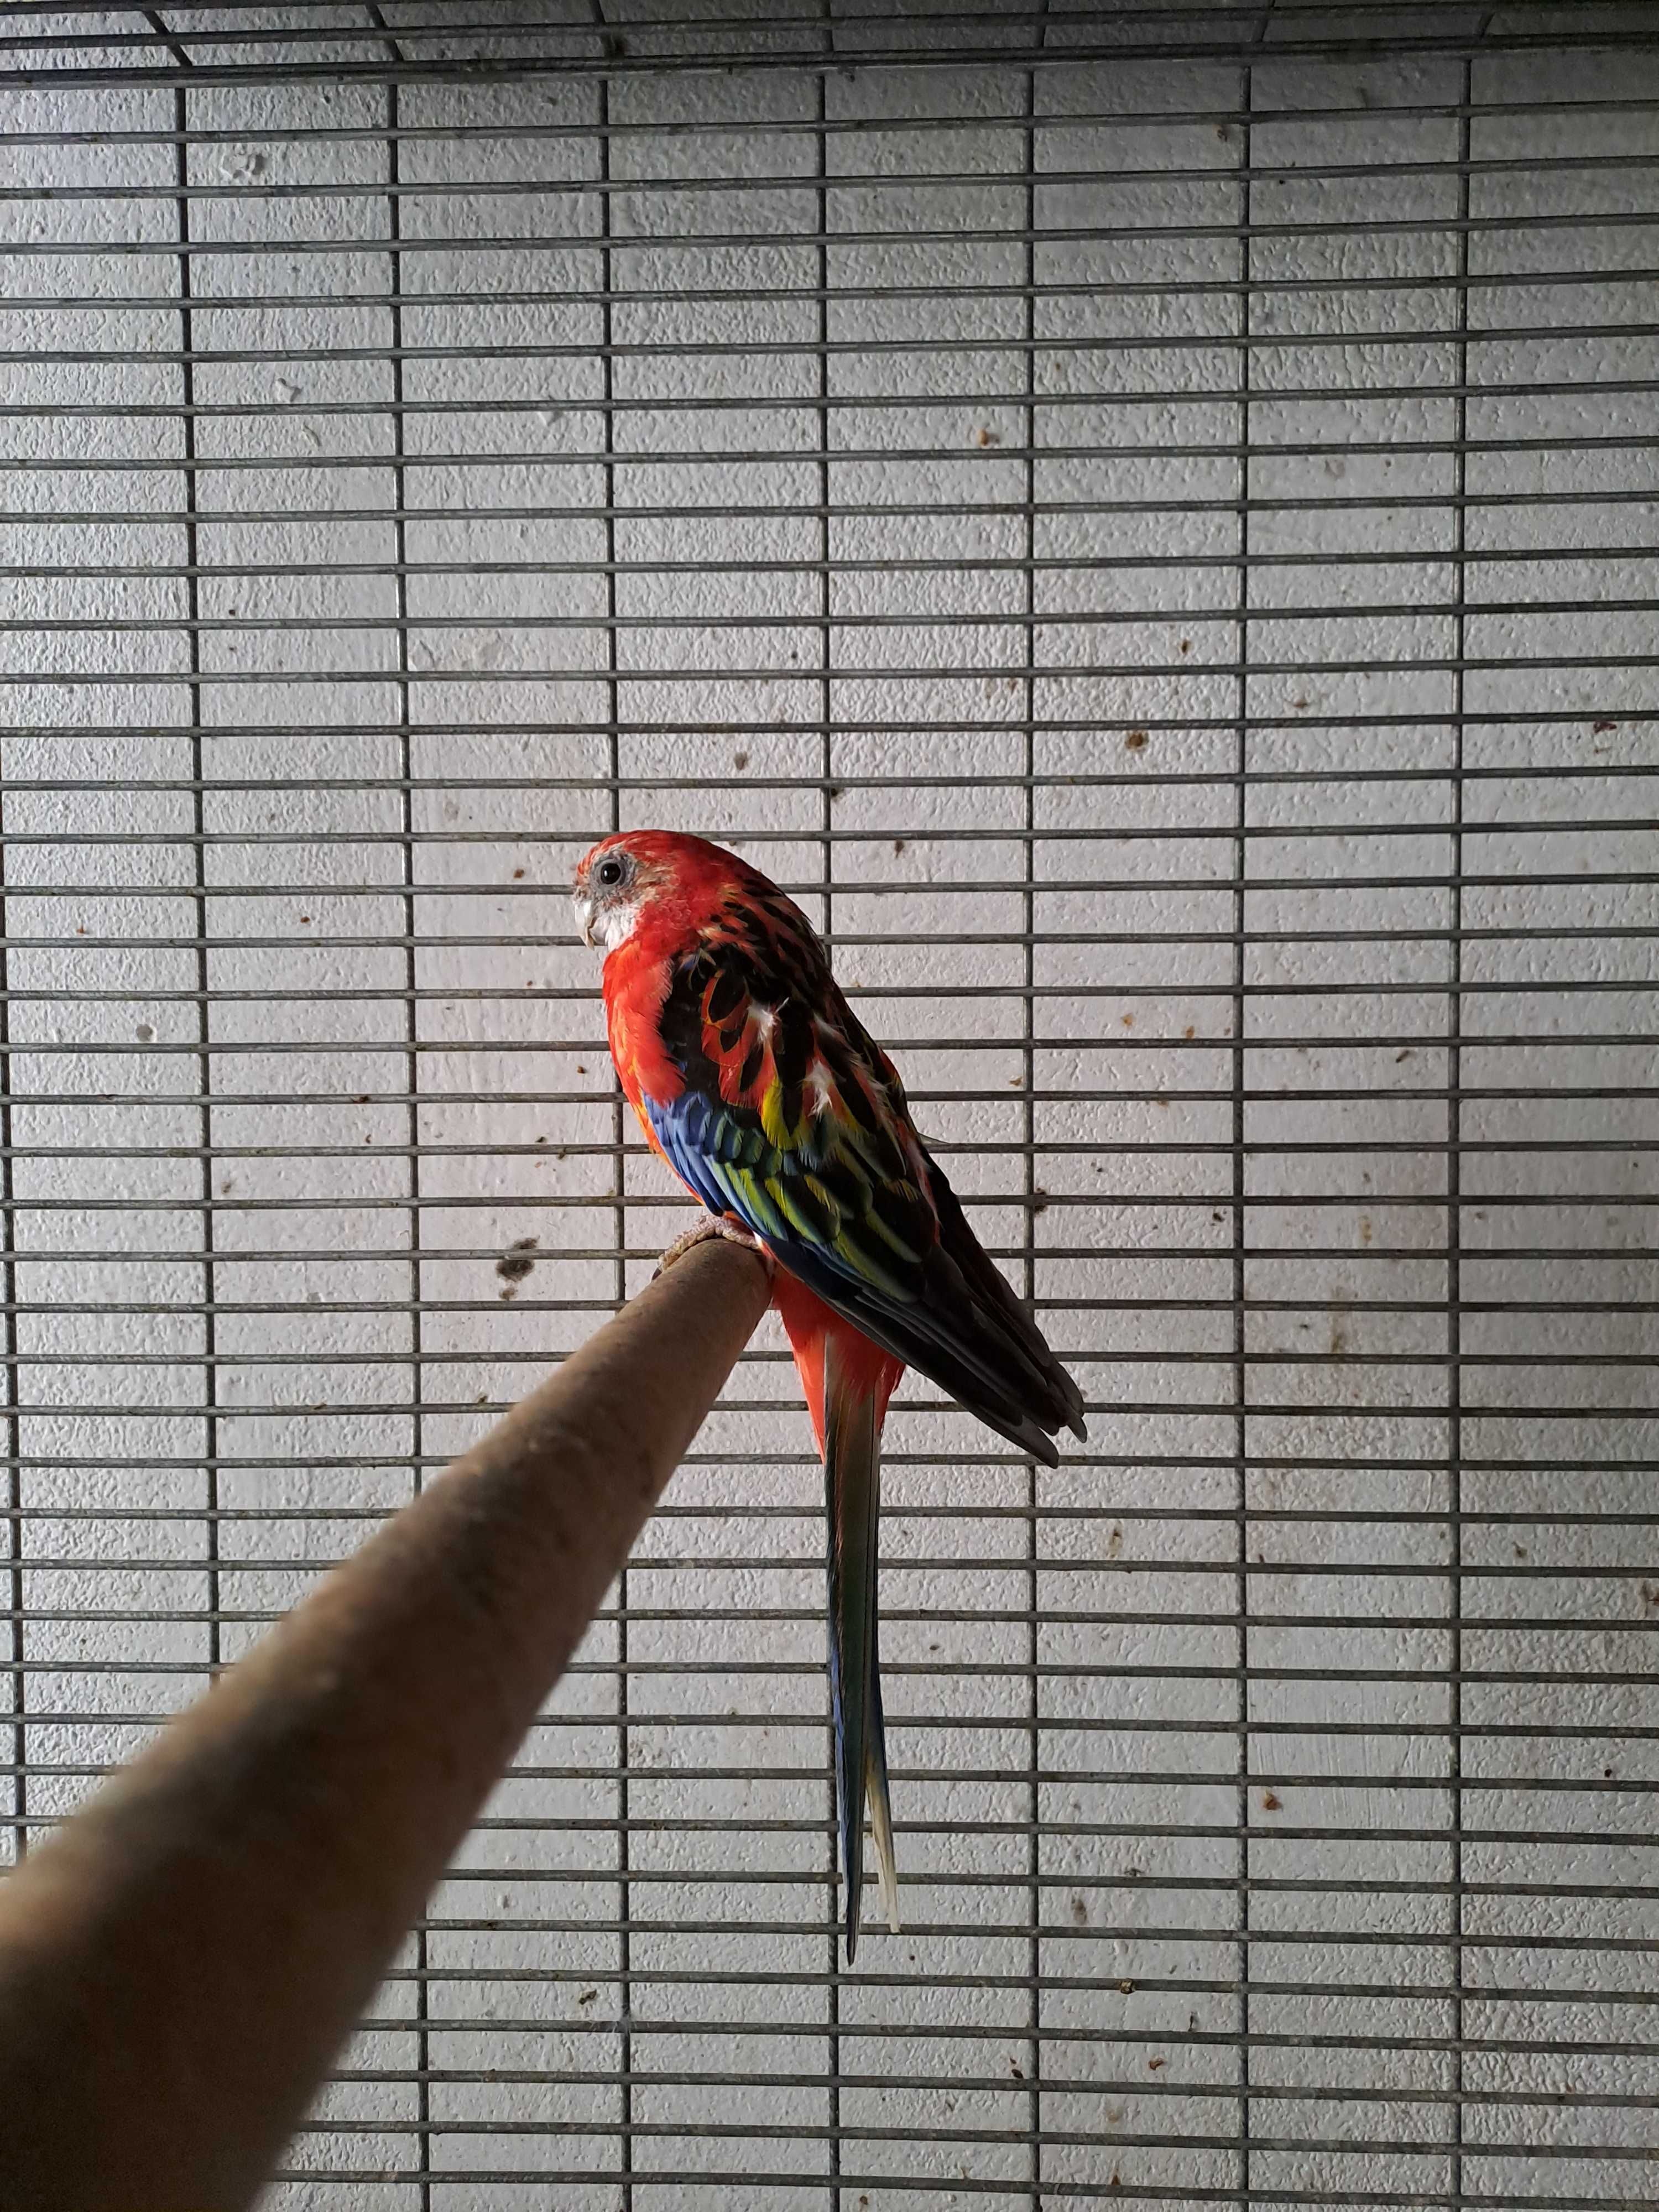 Papagalii rosella